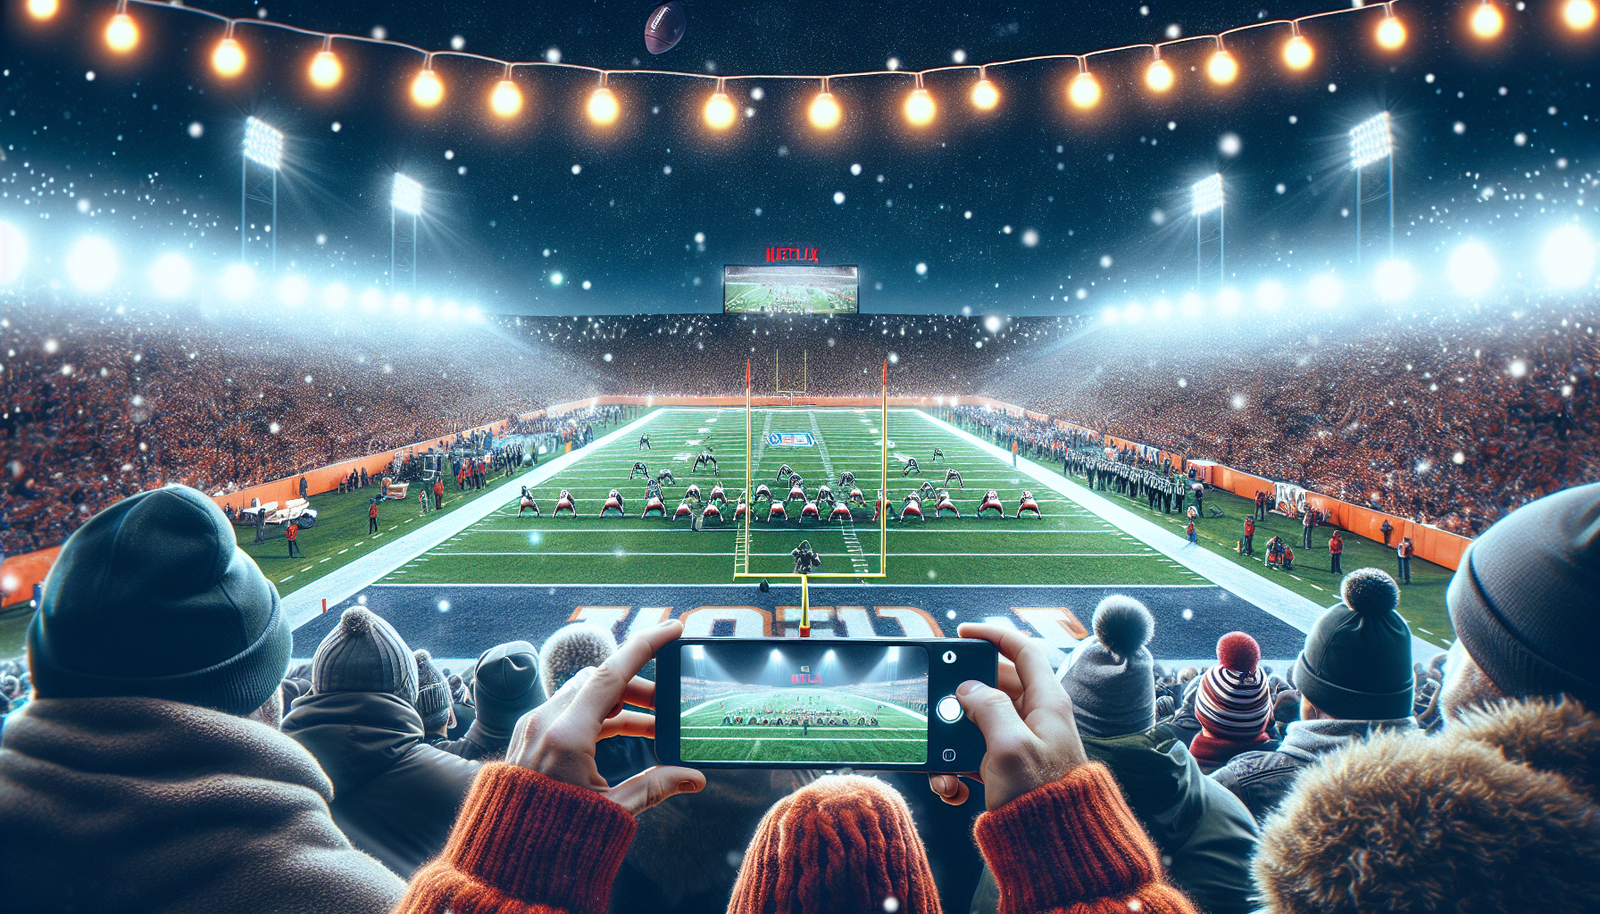 Descubra si Netflix podría convertirse en el destino inesperado para los juegos navideños de la NFL en este artículo que invita a la reflexión.